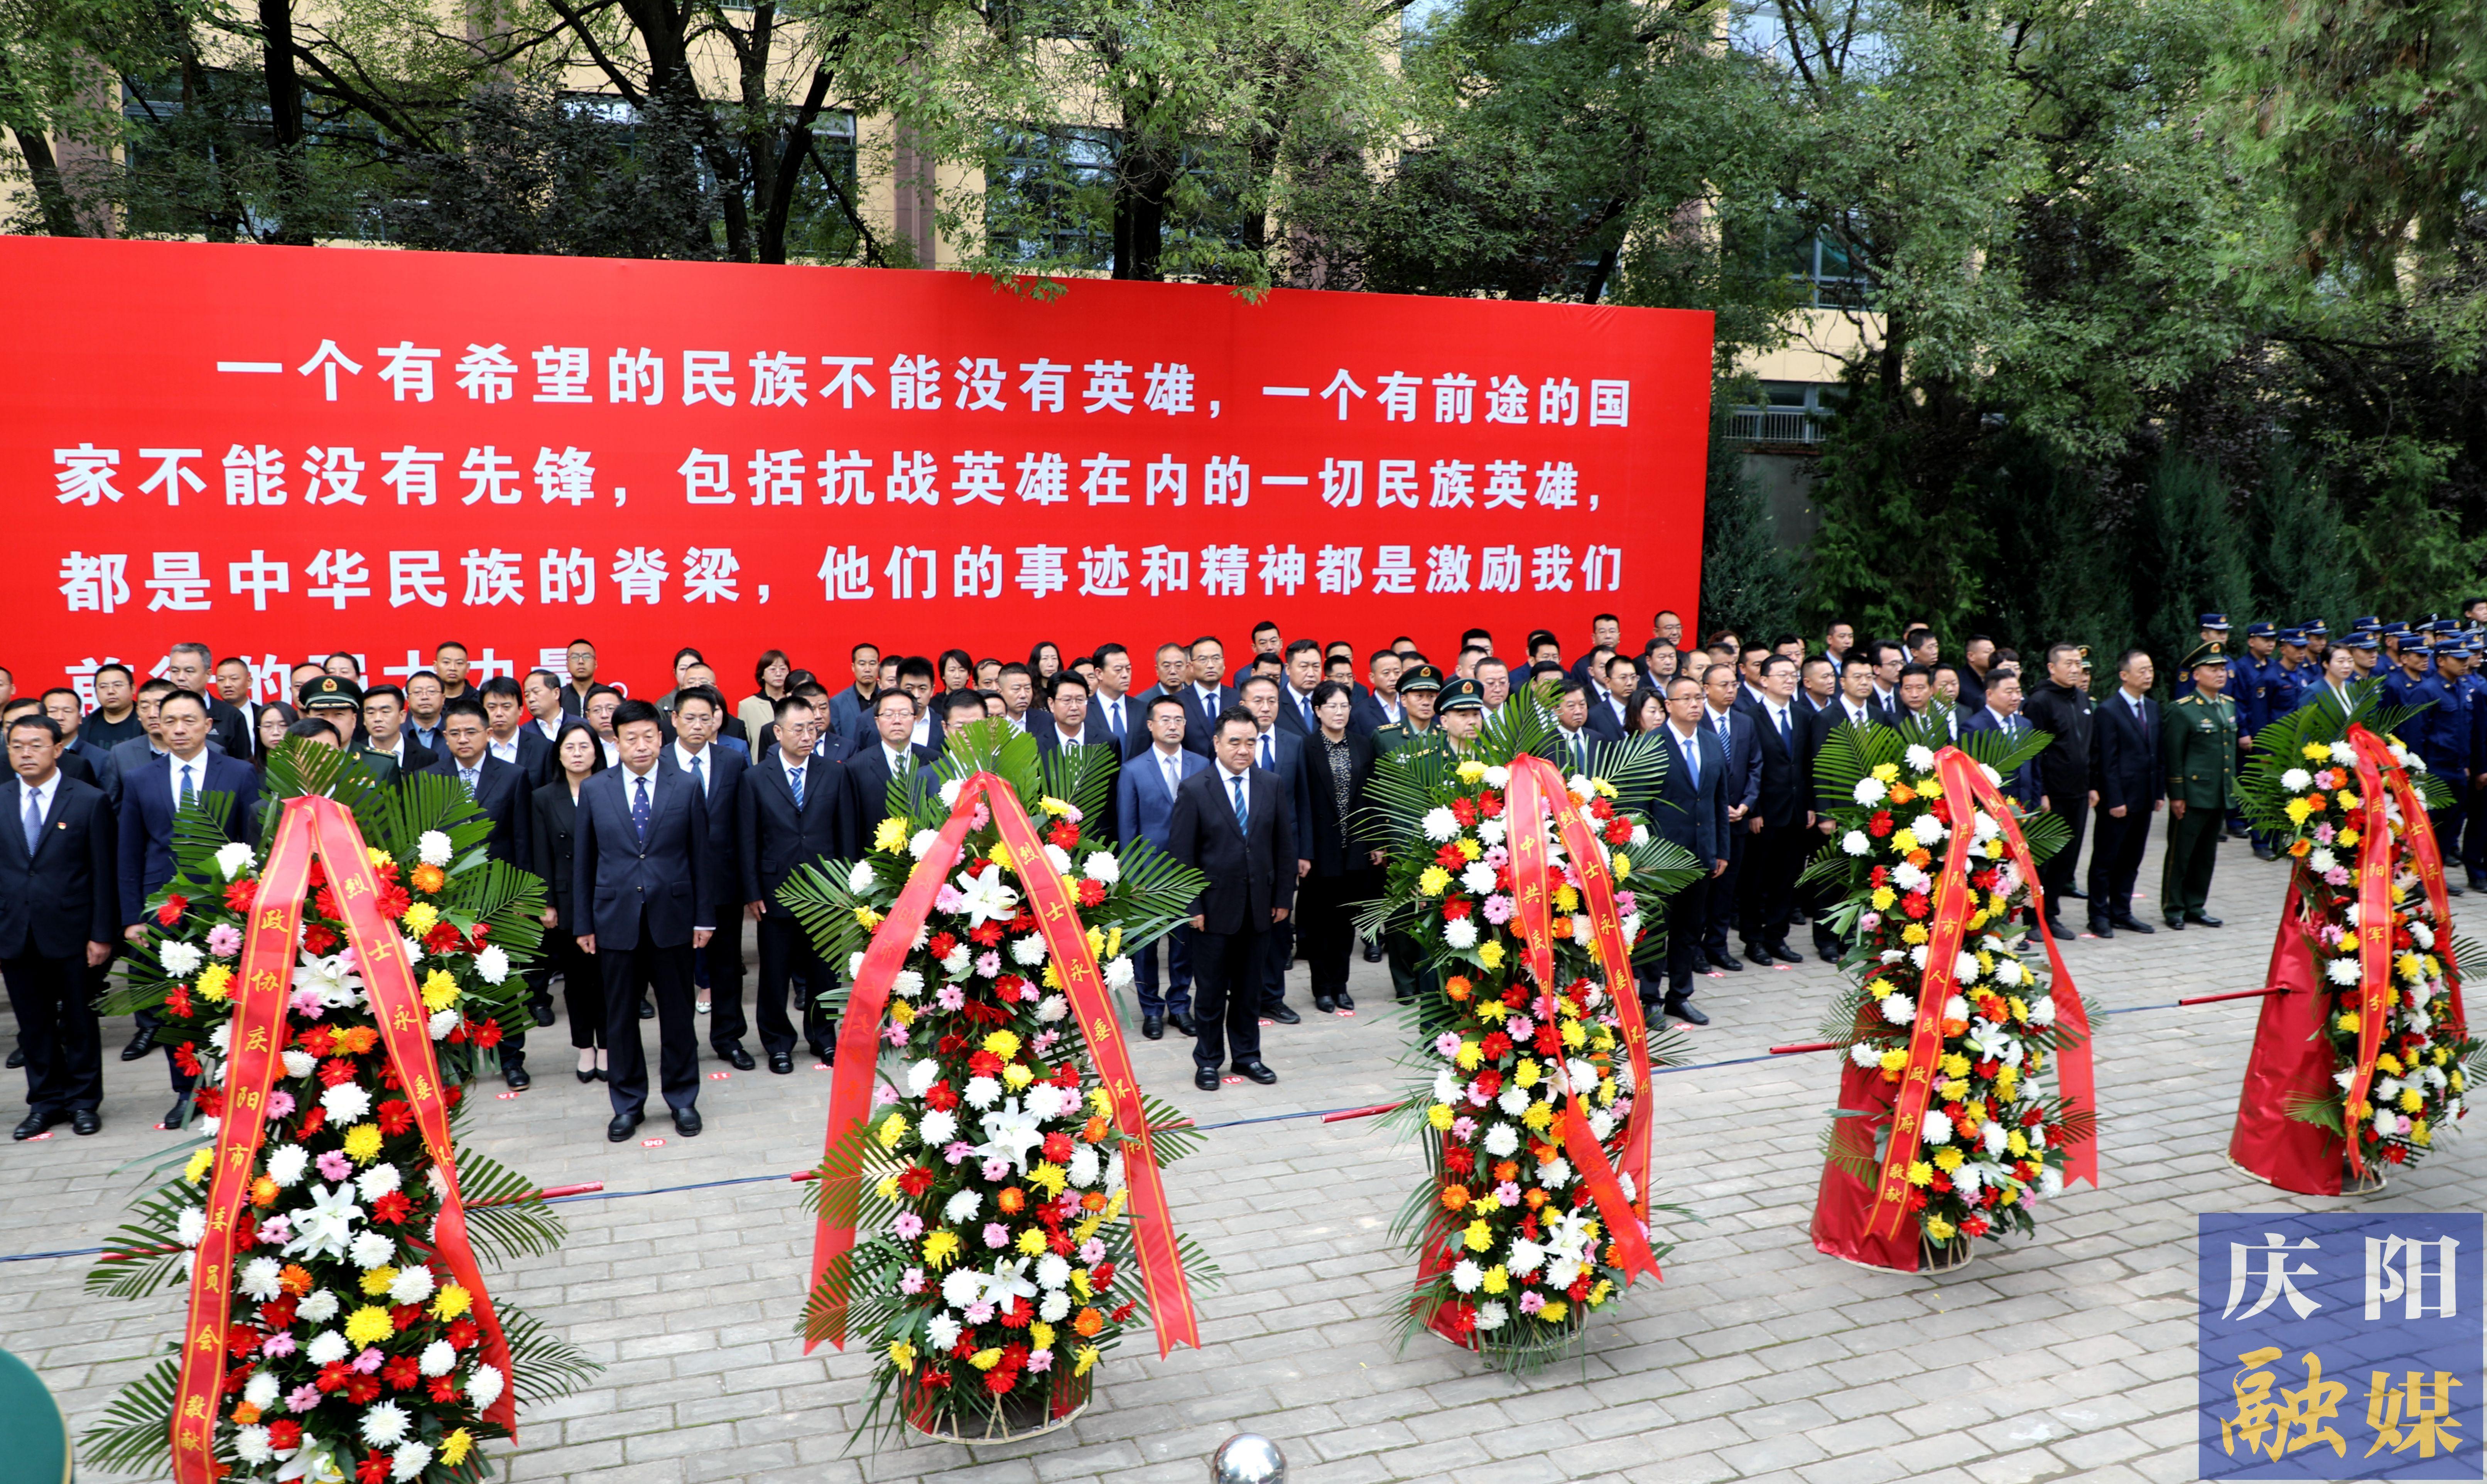 庆阳市隆重举行烈士纪念日向革命烈士敬献花篮仪式